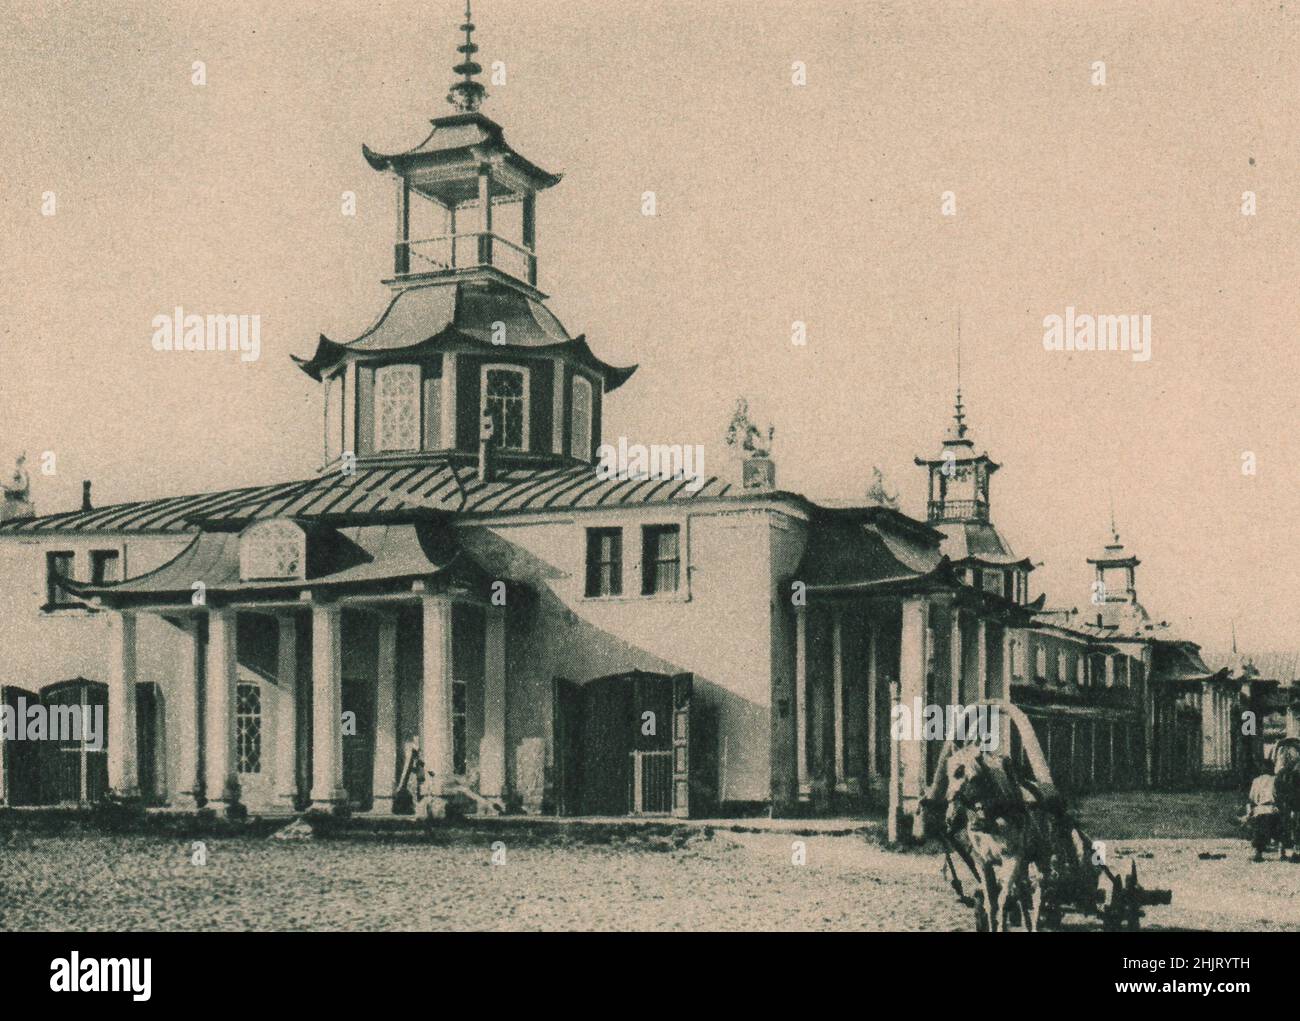 Geschwungene Dachrinnen auf diesem Gebäude im Spasskaya Ploshchad in Chabarowsk zeigen starken mongolischen Einfluss in seiner Architektur. Russland. Sibirien (1923) Stockfoto